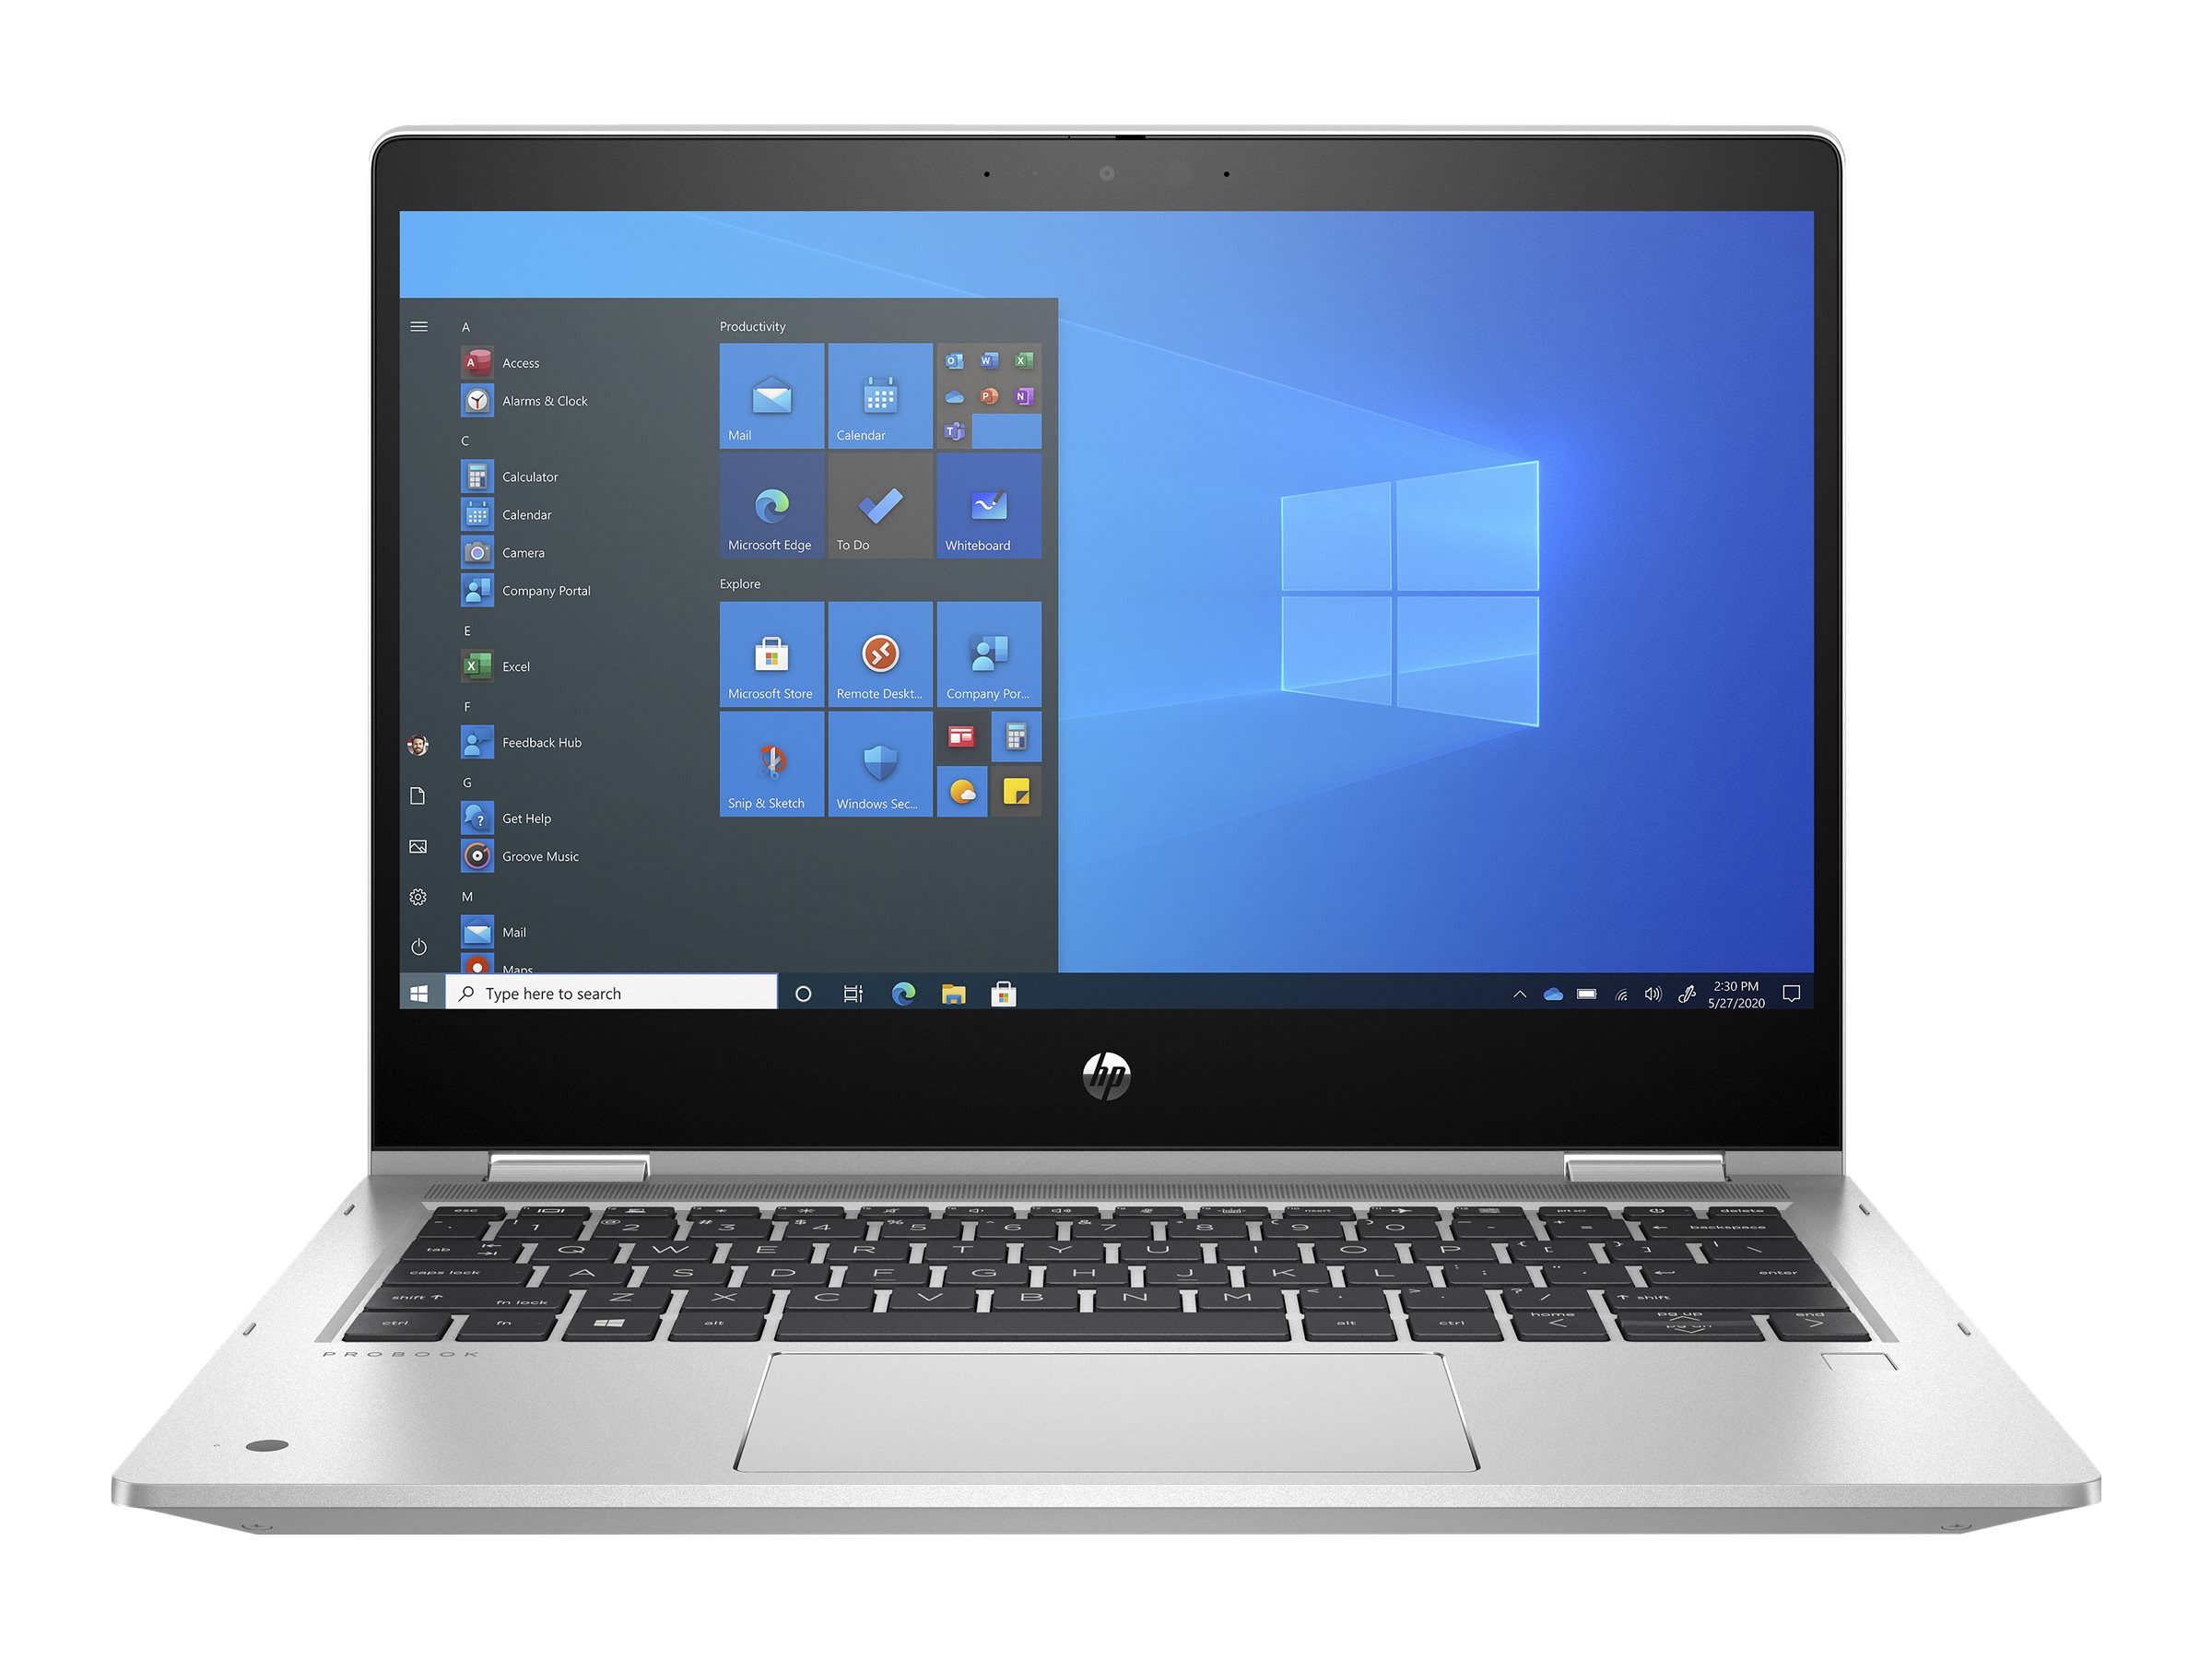 HP ProBook x360 (435 G8 Notebook)